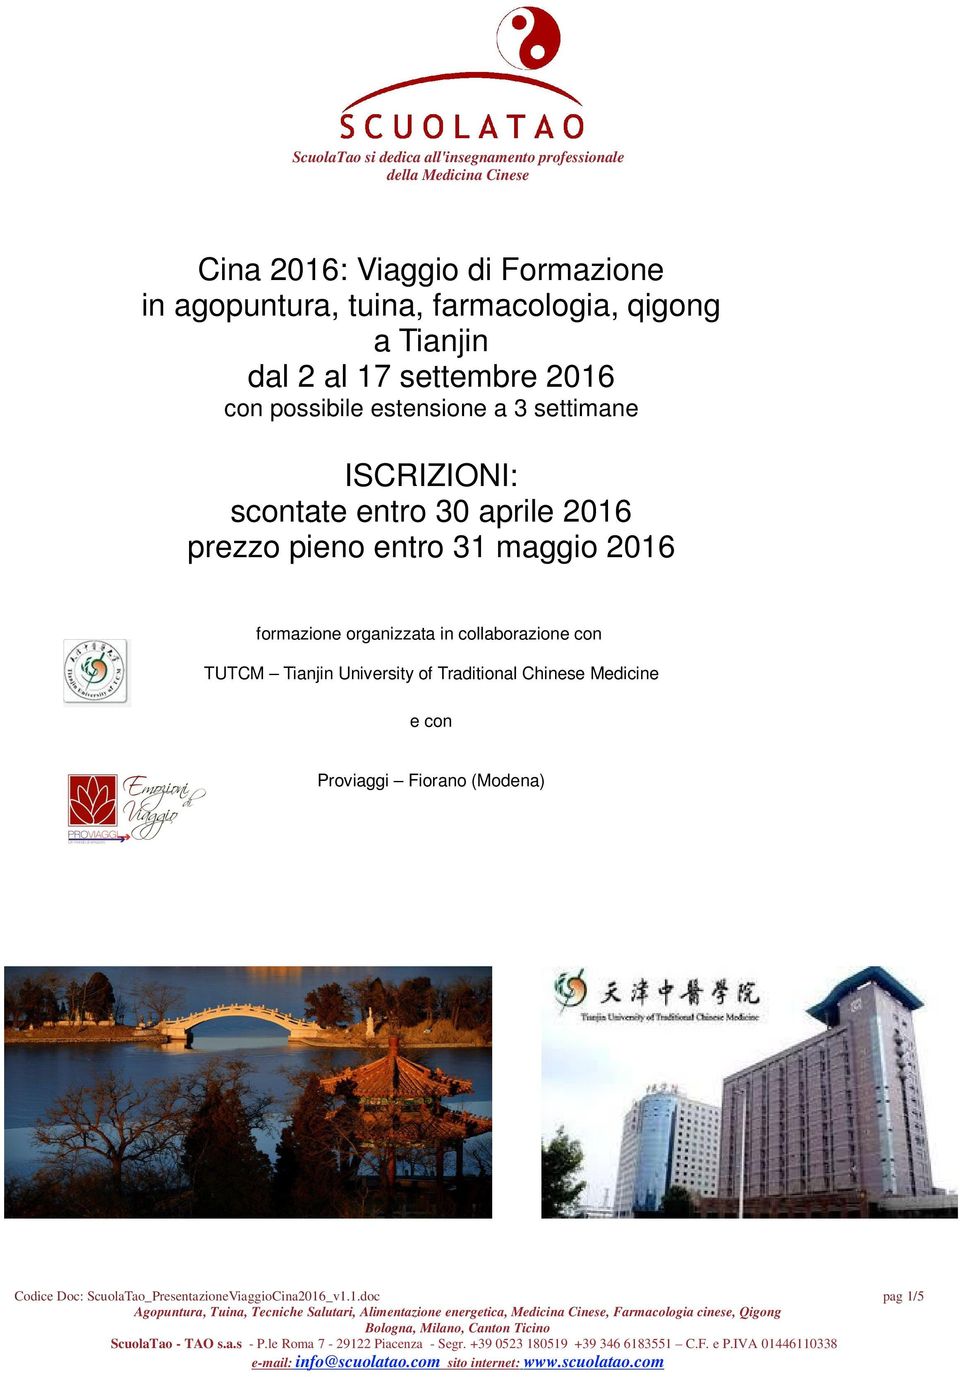 Medicine e con Proviaggi Fiorano (Modena) Codice Doc: ScuolaTao_PresentazioneViaggioCina2016